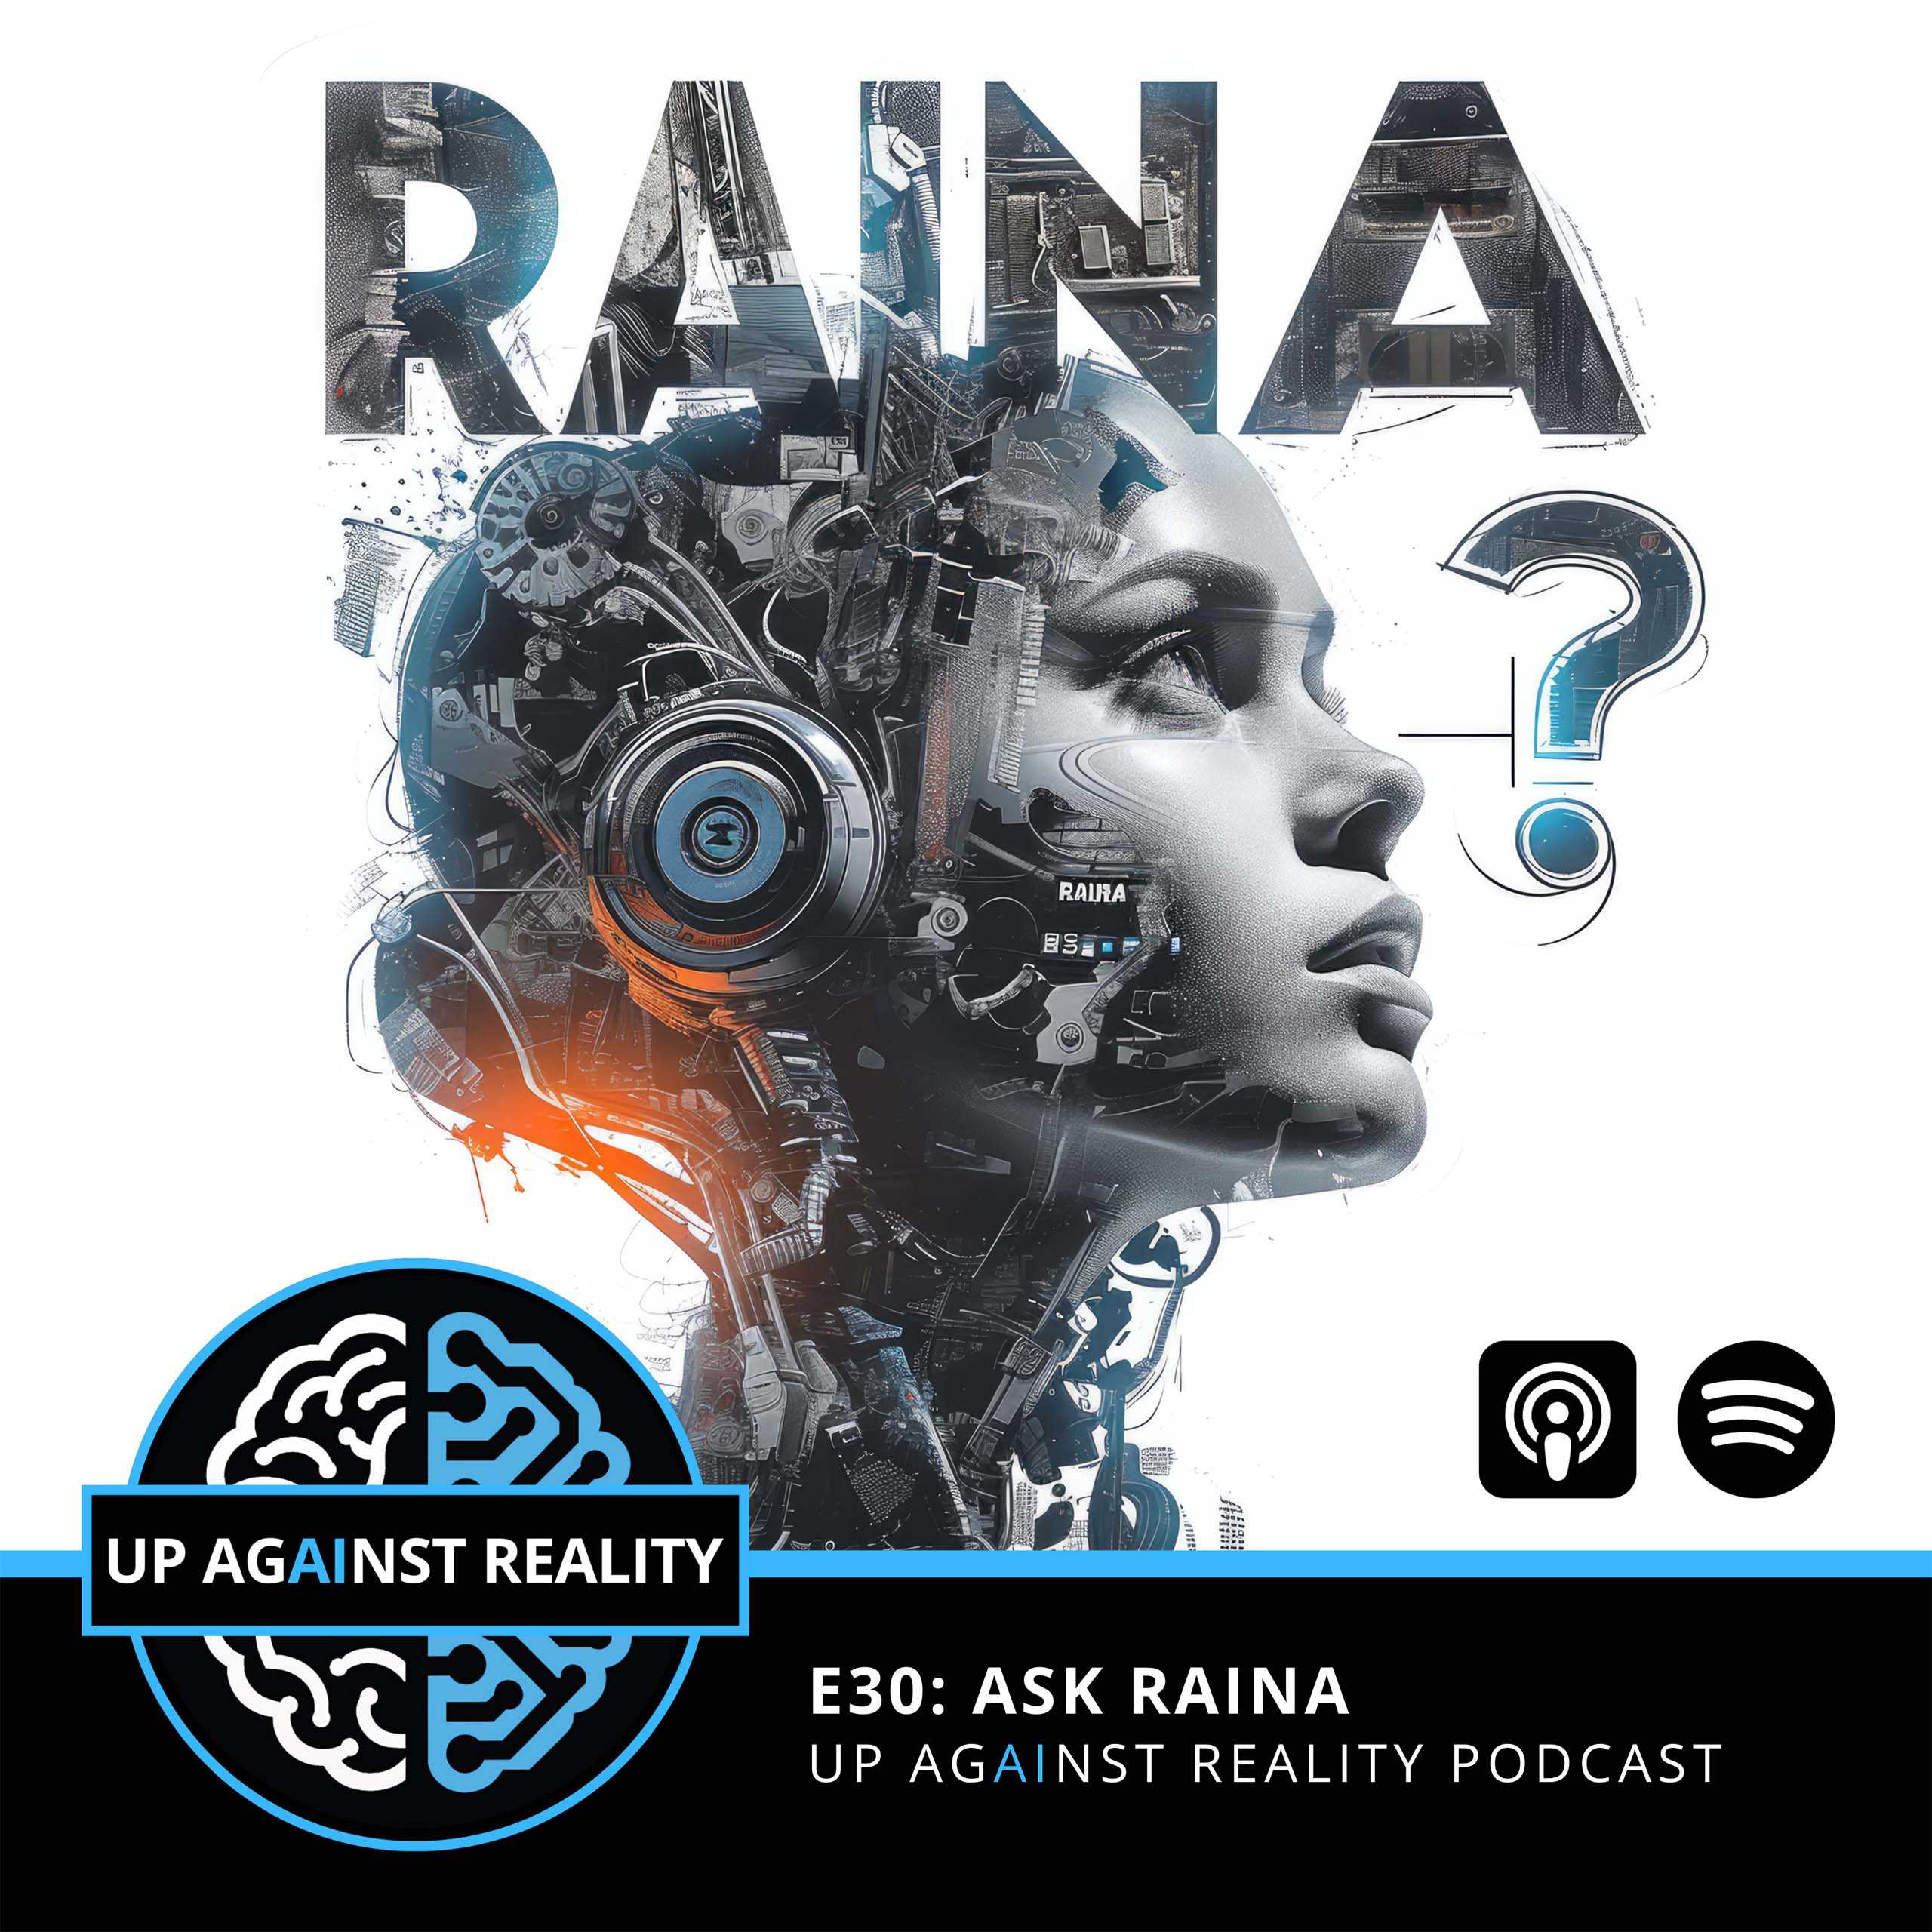 E30: Ask RAINA